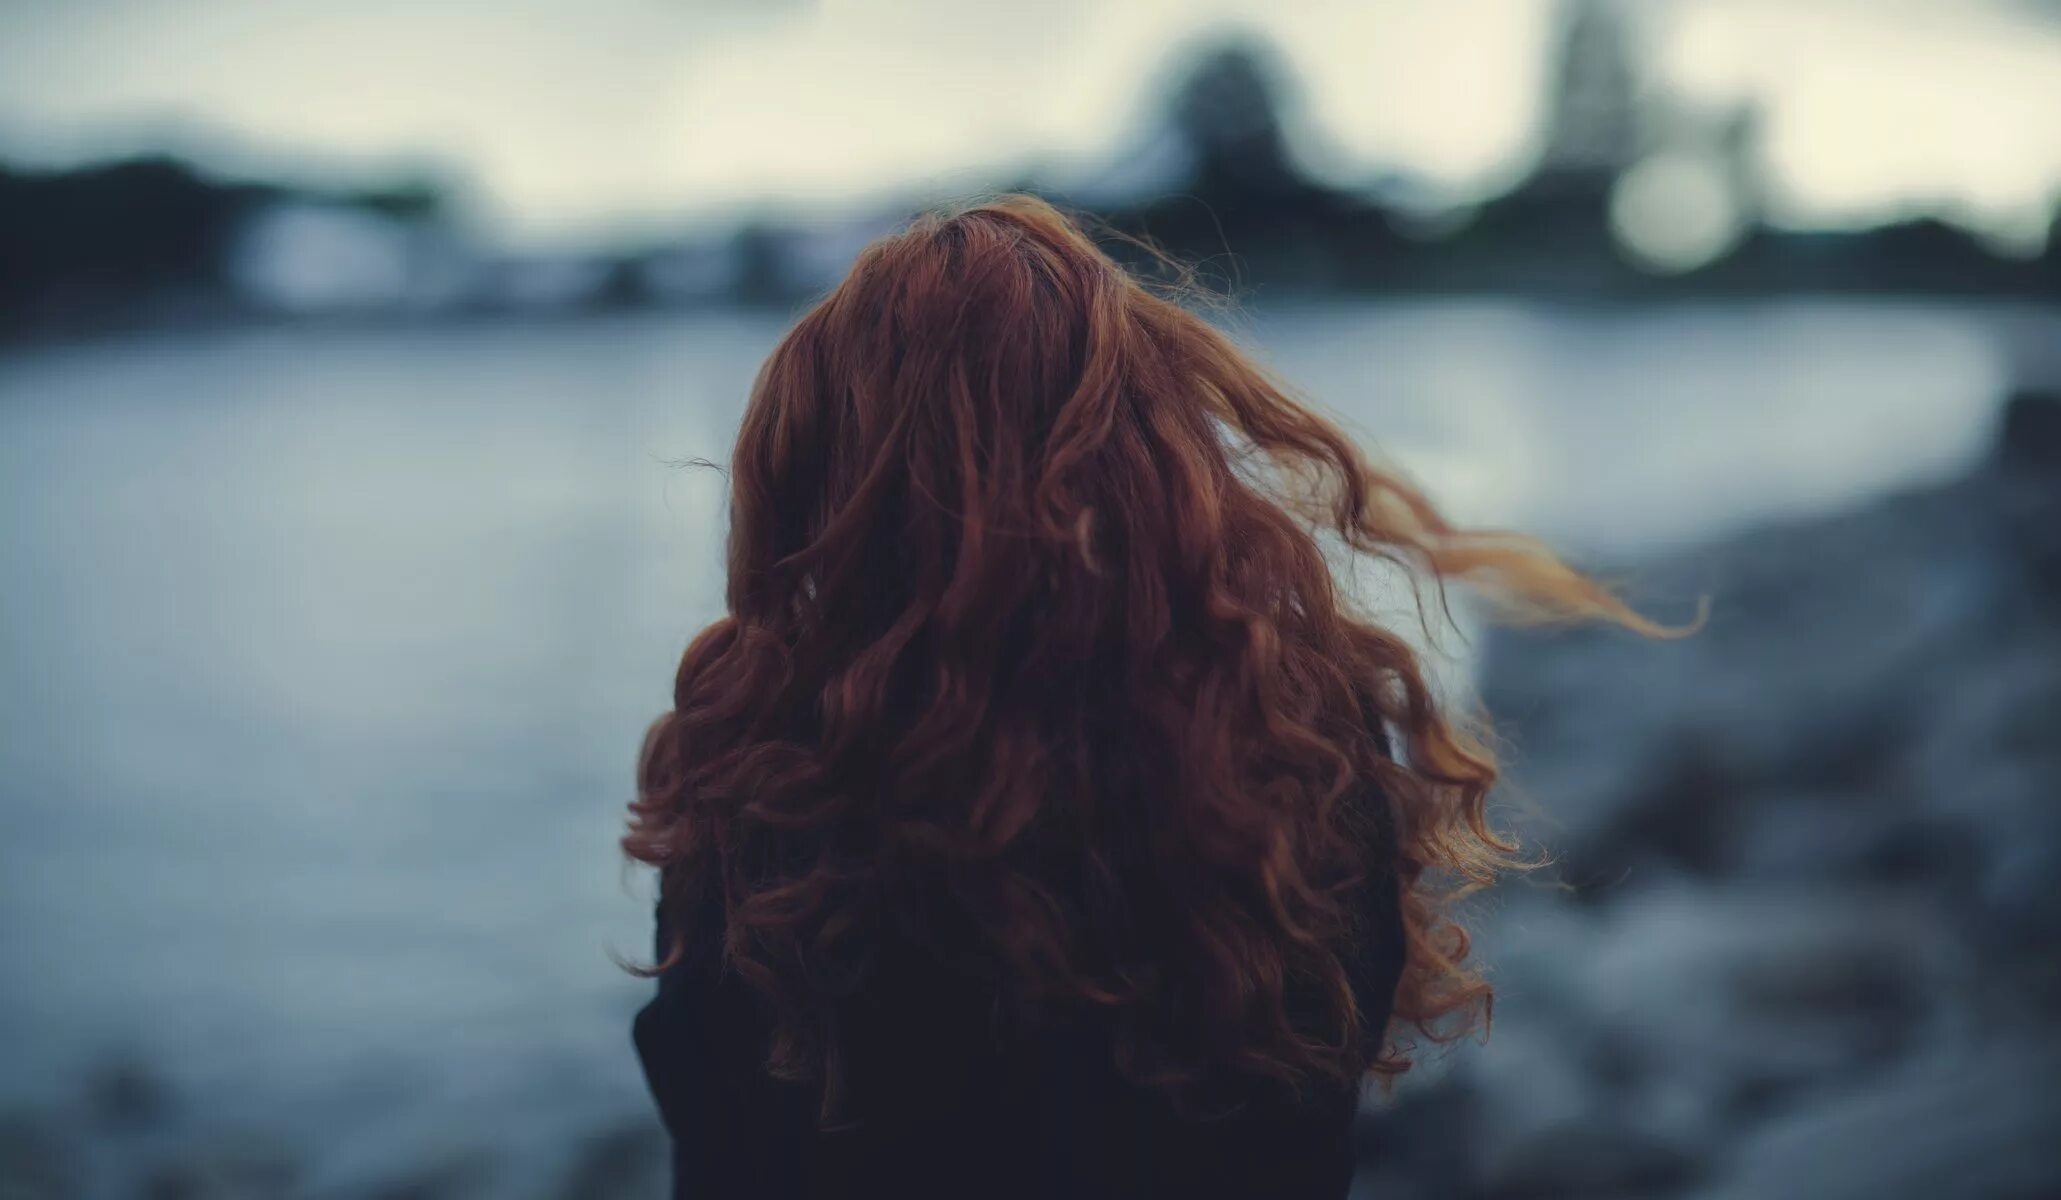 Рыжие волосы со спины. Кудрявая девушка. Рыжая девушка со спины. Девушка с рыжими волосами со спины.